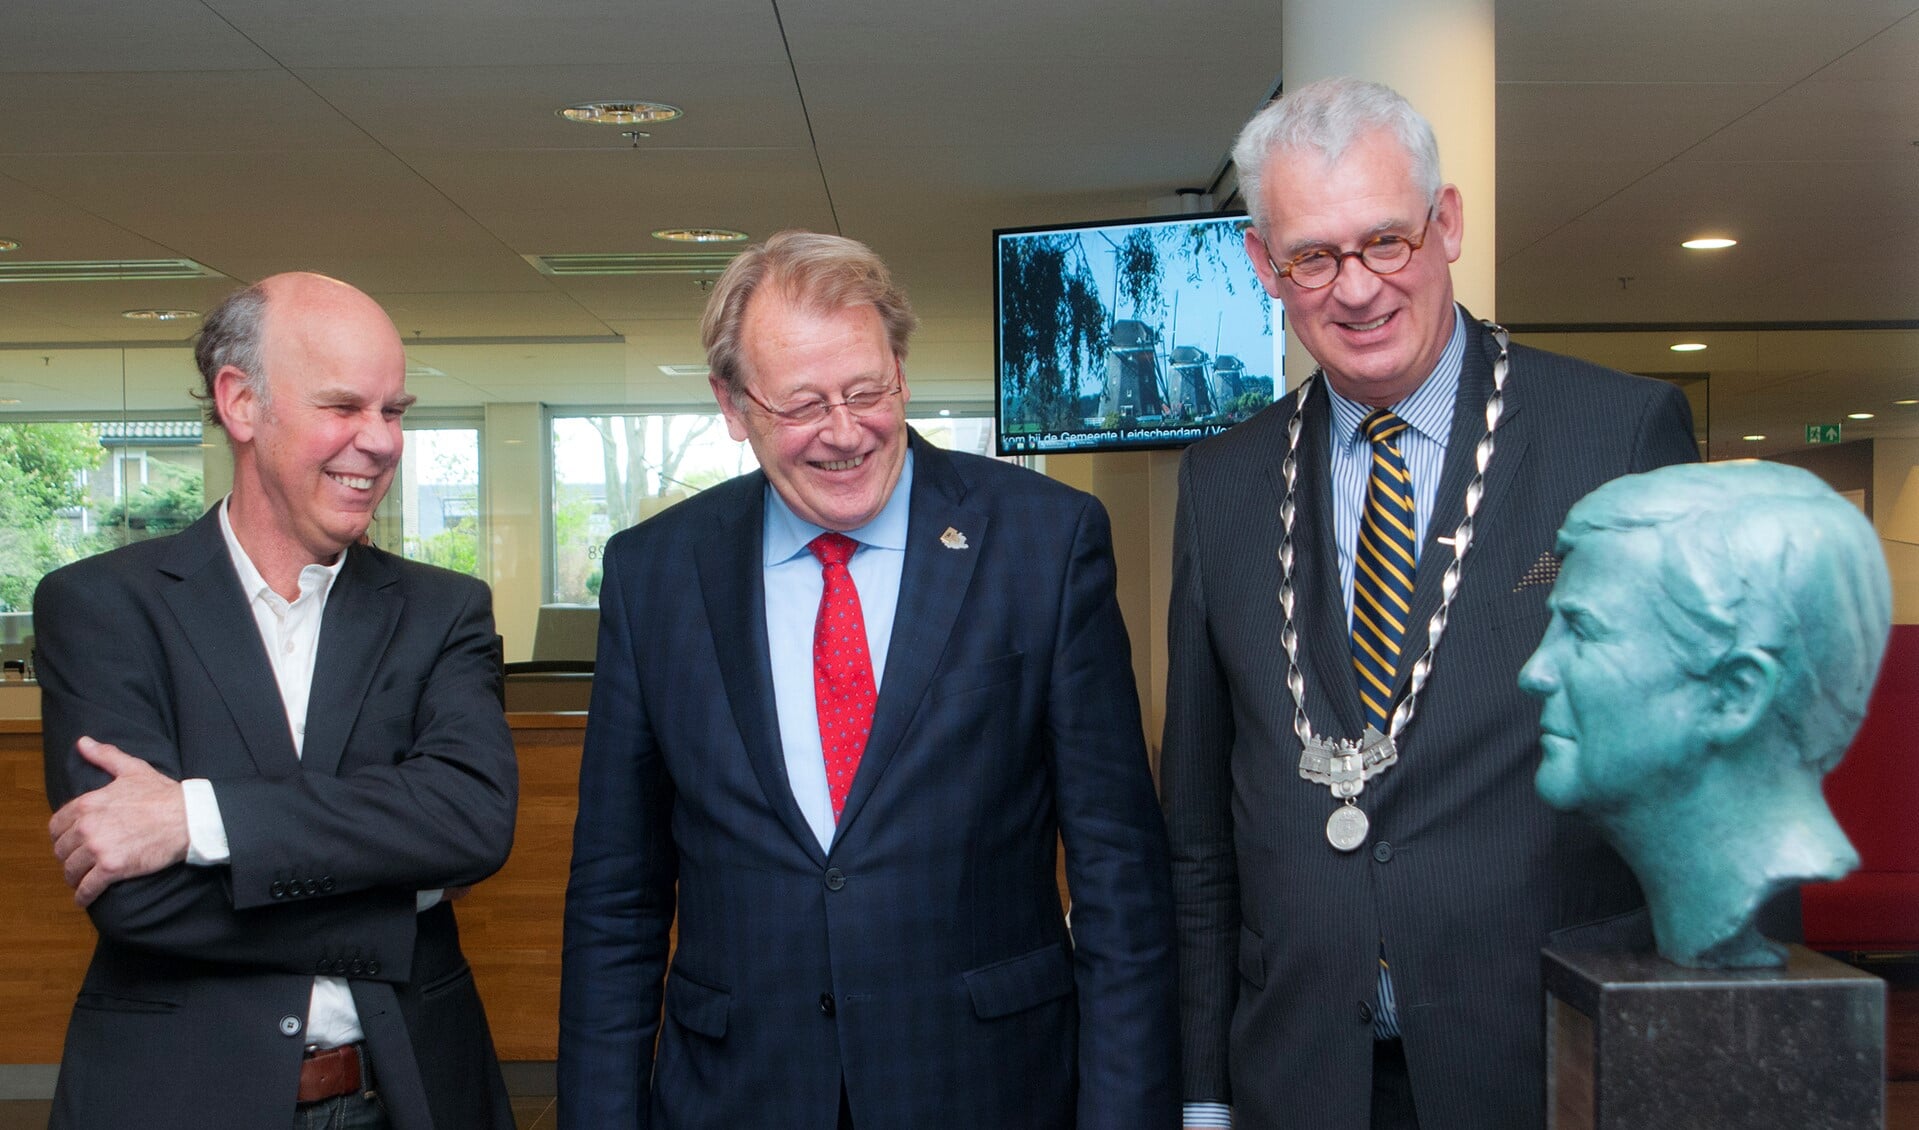 Kunstenaar Guido Sprenkels, Commissaris v.d. Koning Jaap Smit en burgemeester Hans van der Sluijs bij het beeld van Koning Willem-Alexander (foto: Michel Groen).